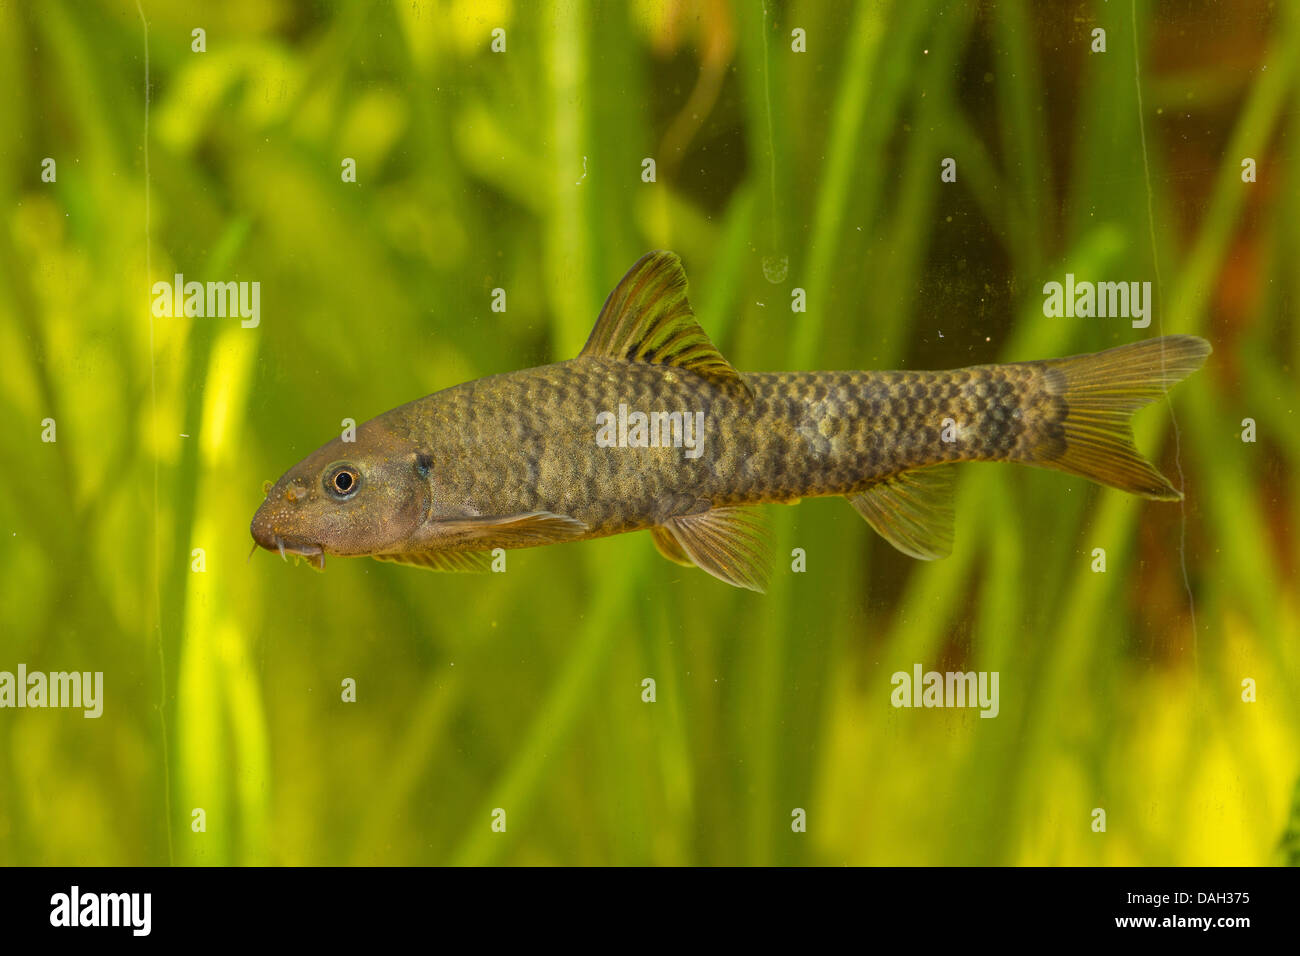 https://c8.alamy.com/comp/DAH375/doctor-fish-garra-rufa-swimming-in-front-of-water-plants-DAH375.jpg